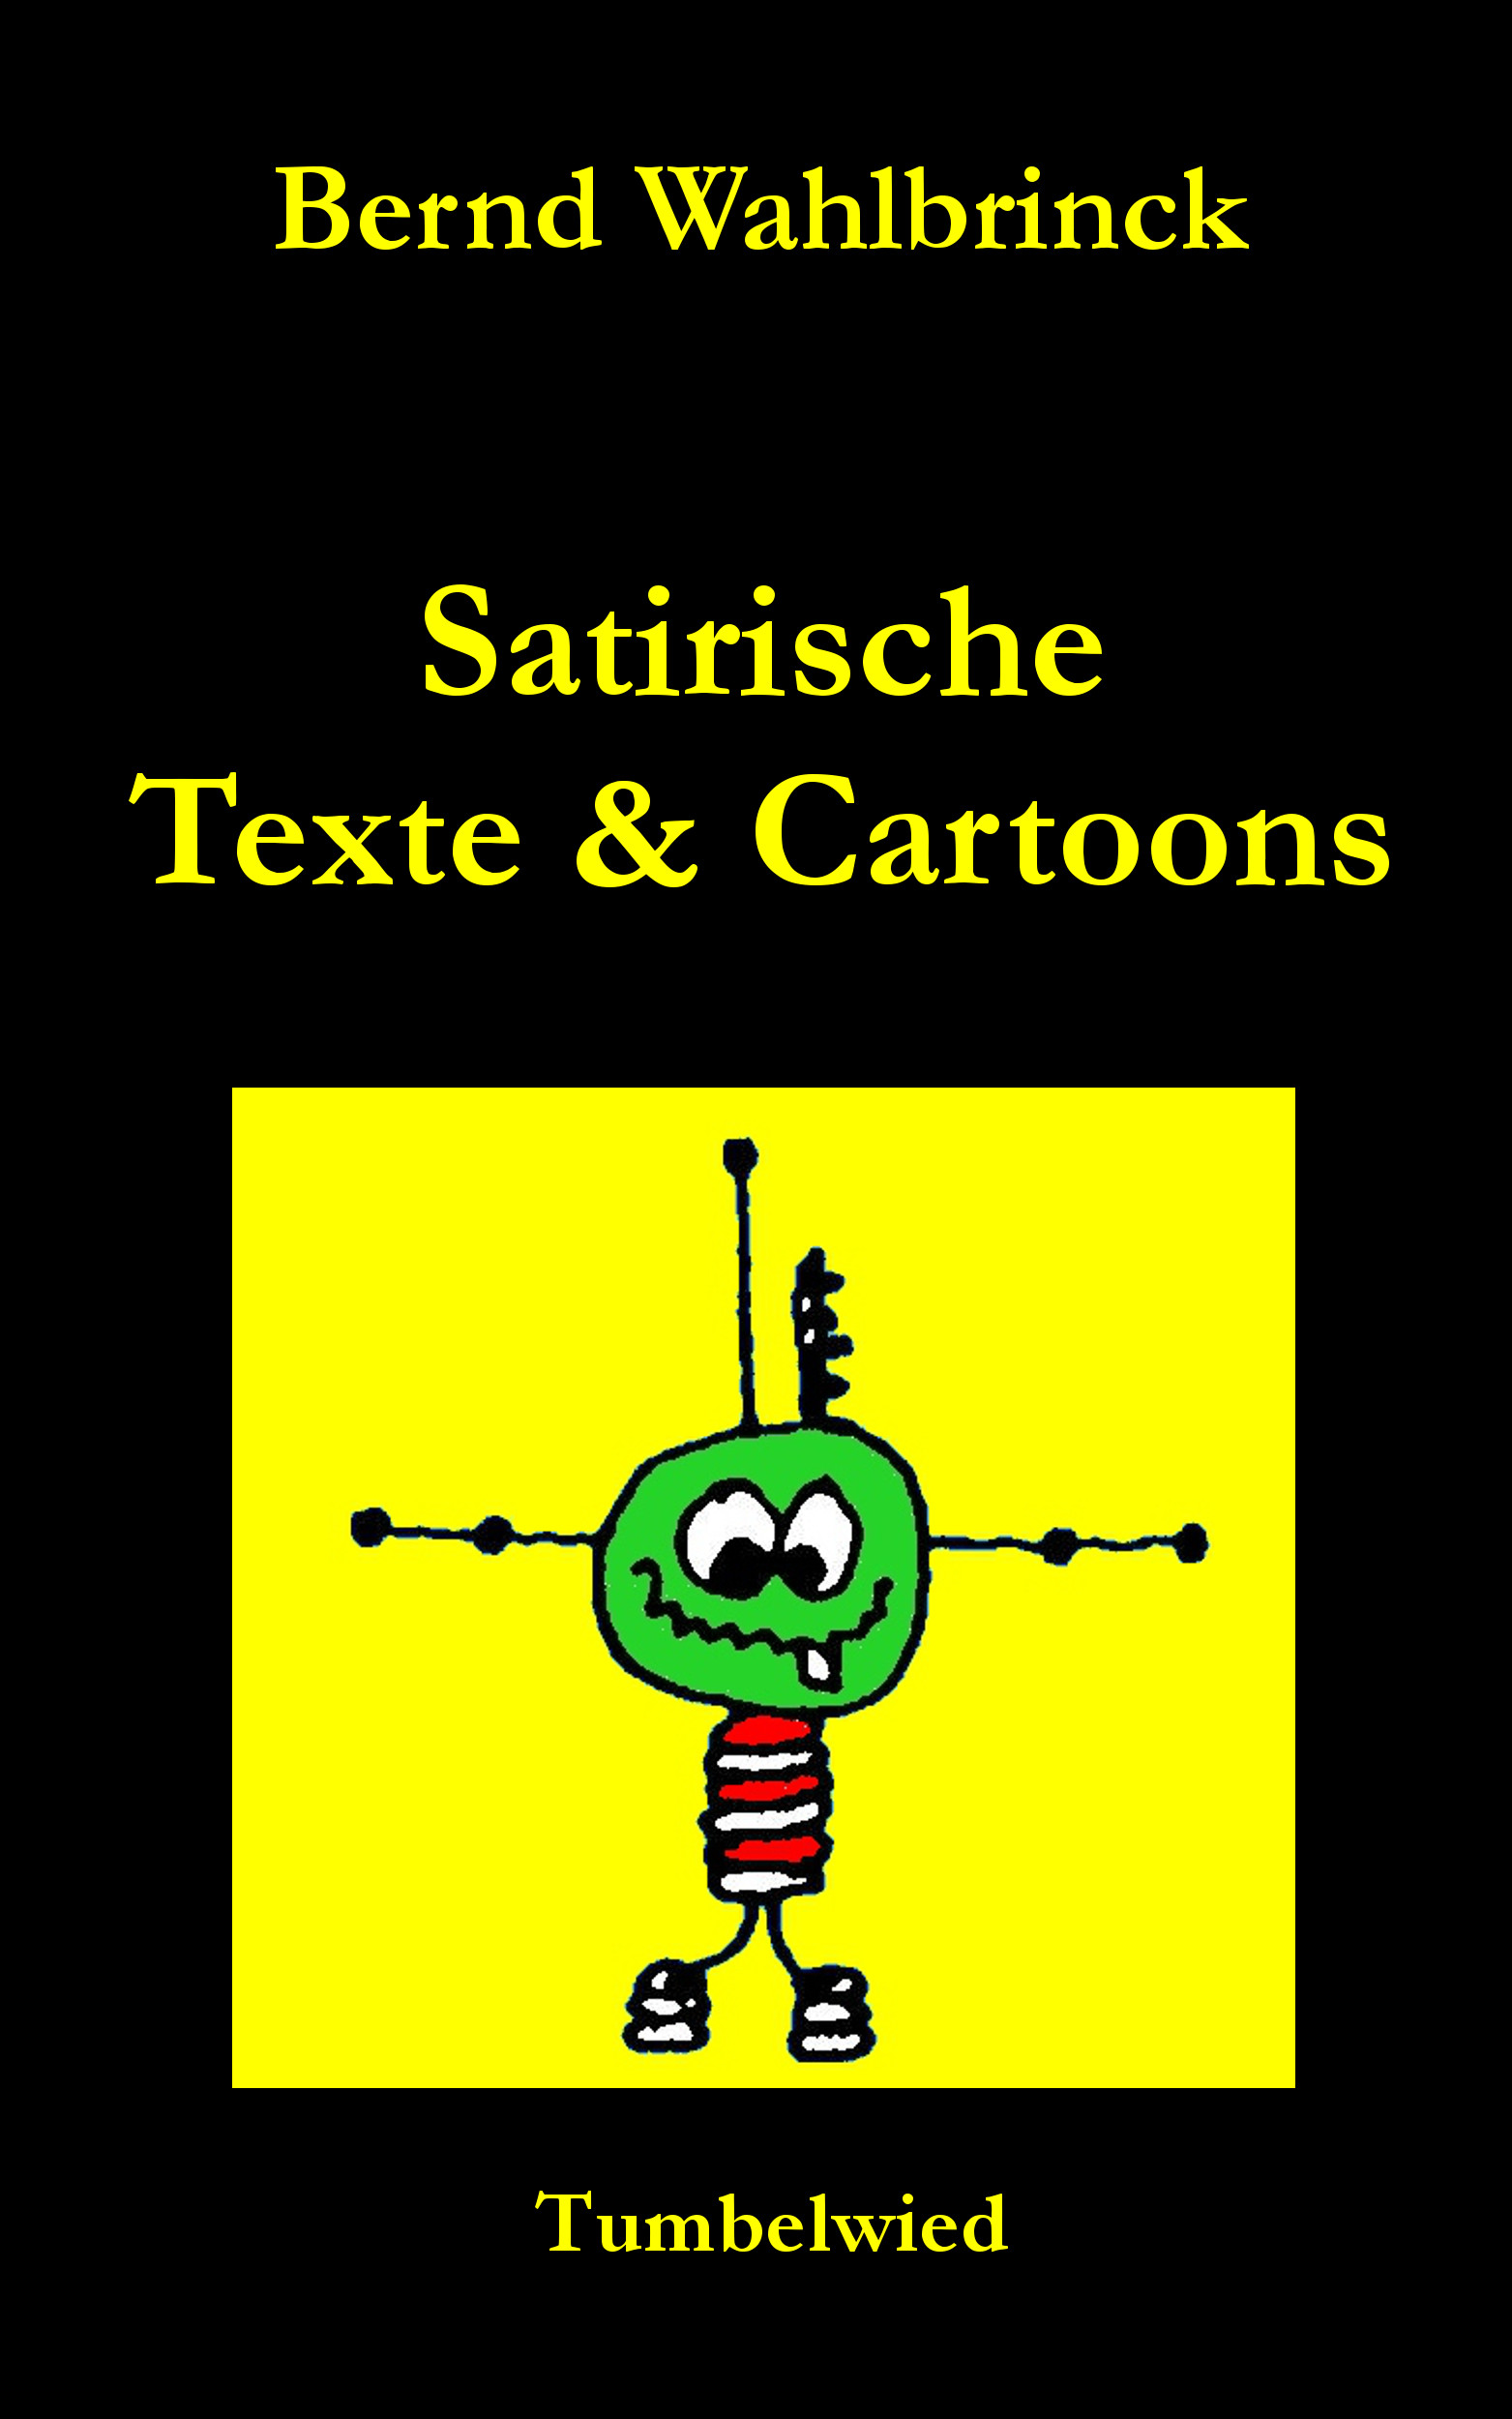 Satirische Texte & Cartoons